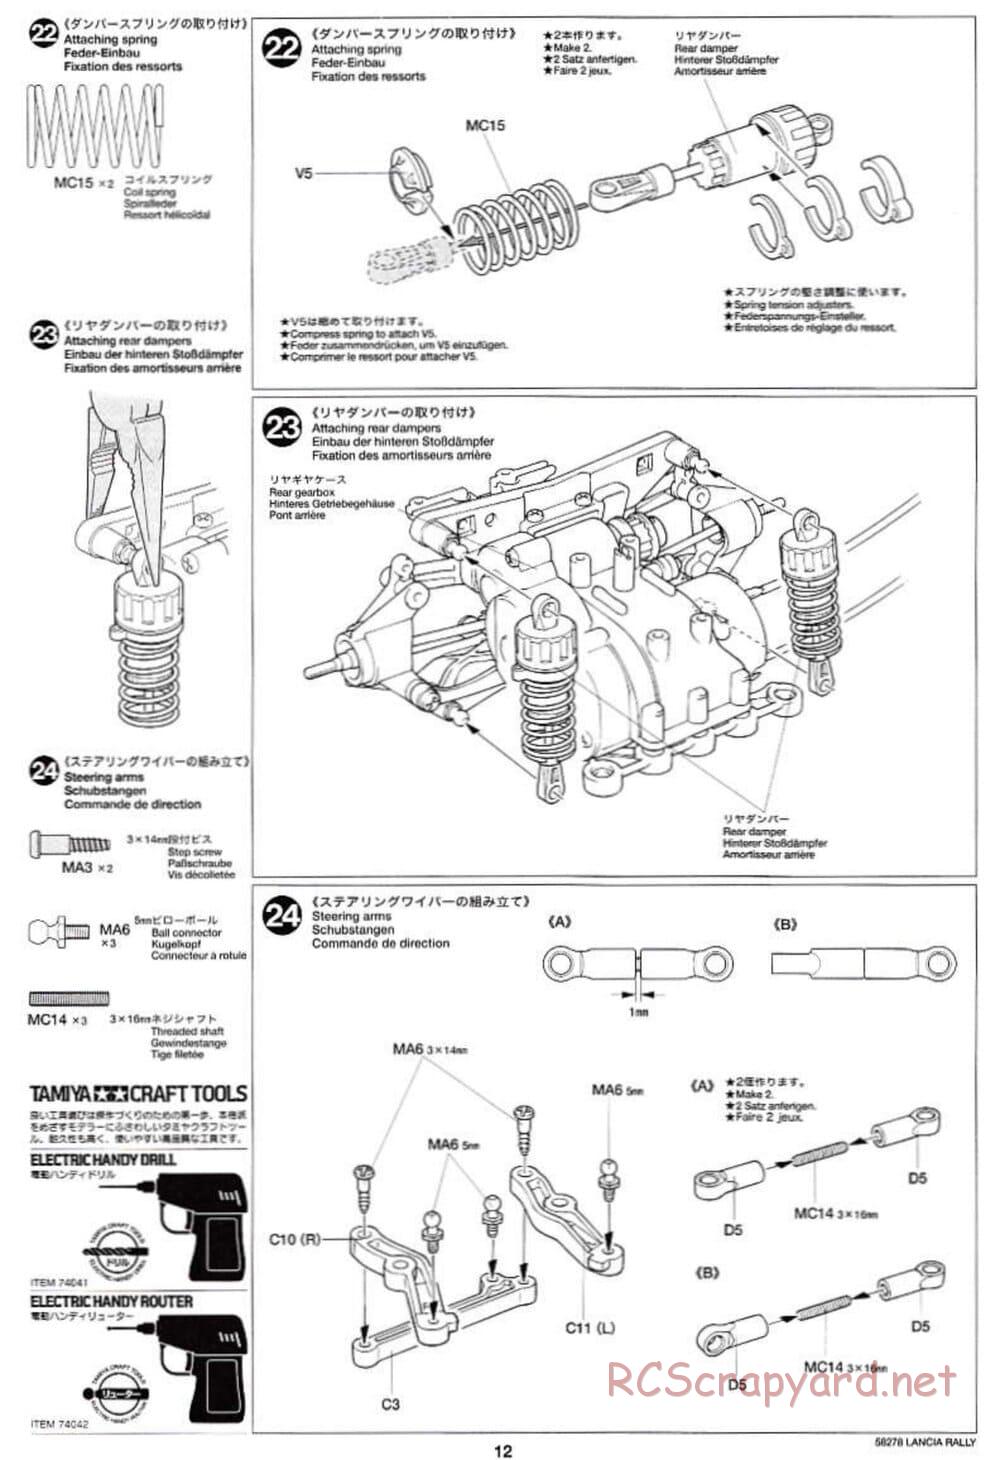 Tamiya - Lancia 037 Rally - TA-03RS Chassis - Manual - Page 12